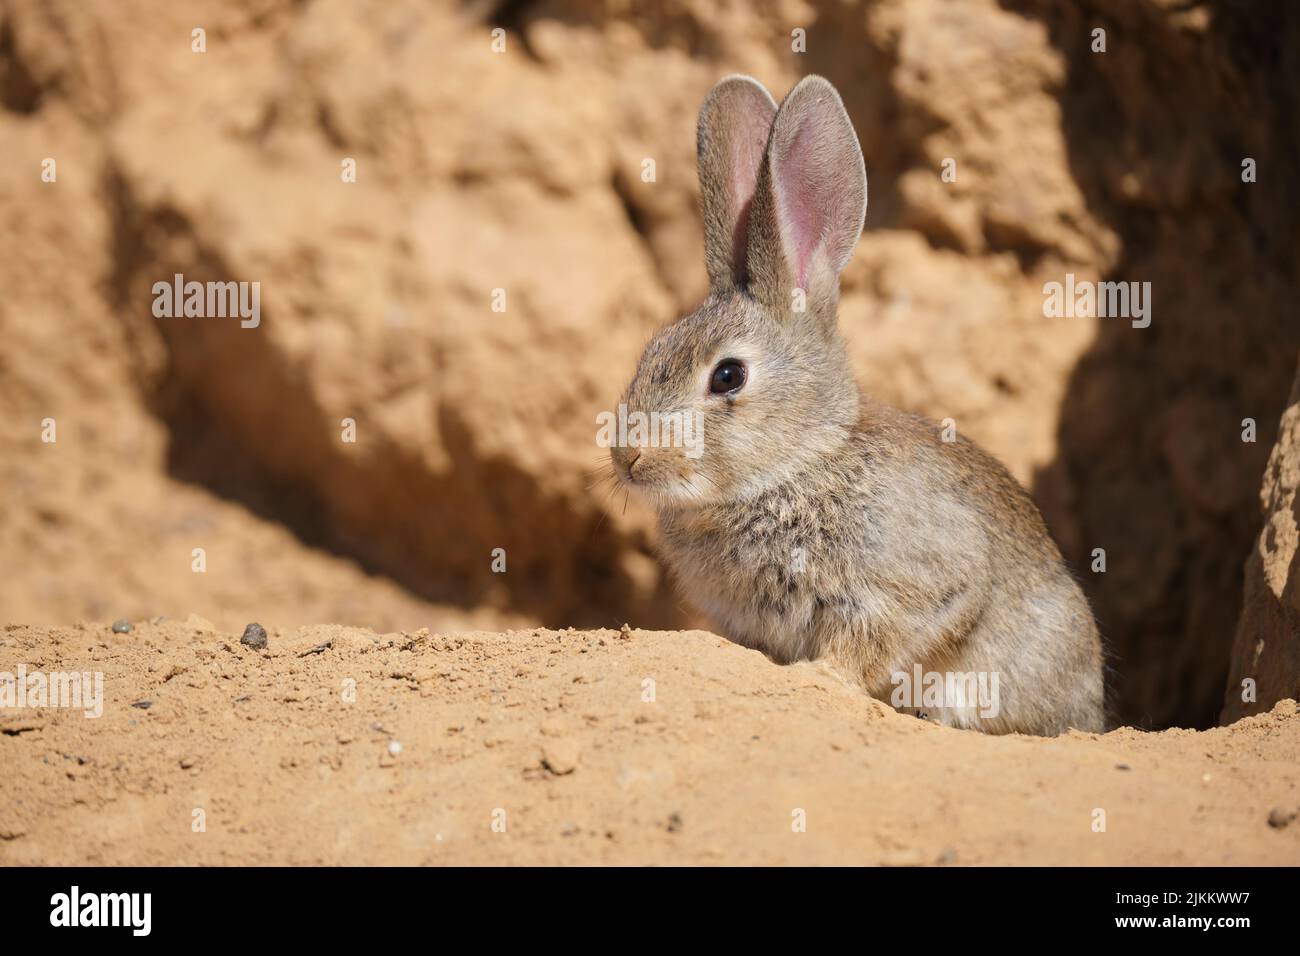 Adorabile sylvilagus audubonii coniglietto seduto su un terreno sabbioso illuminato dal sole vicino a una scogliera di arenaria in una giornata calda nel deserto arido Foto Stock